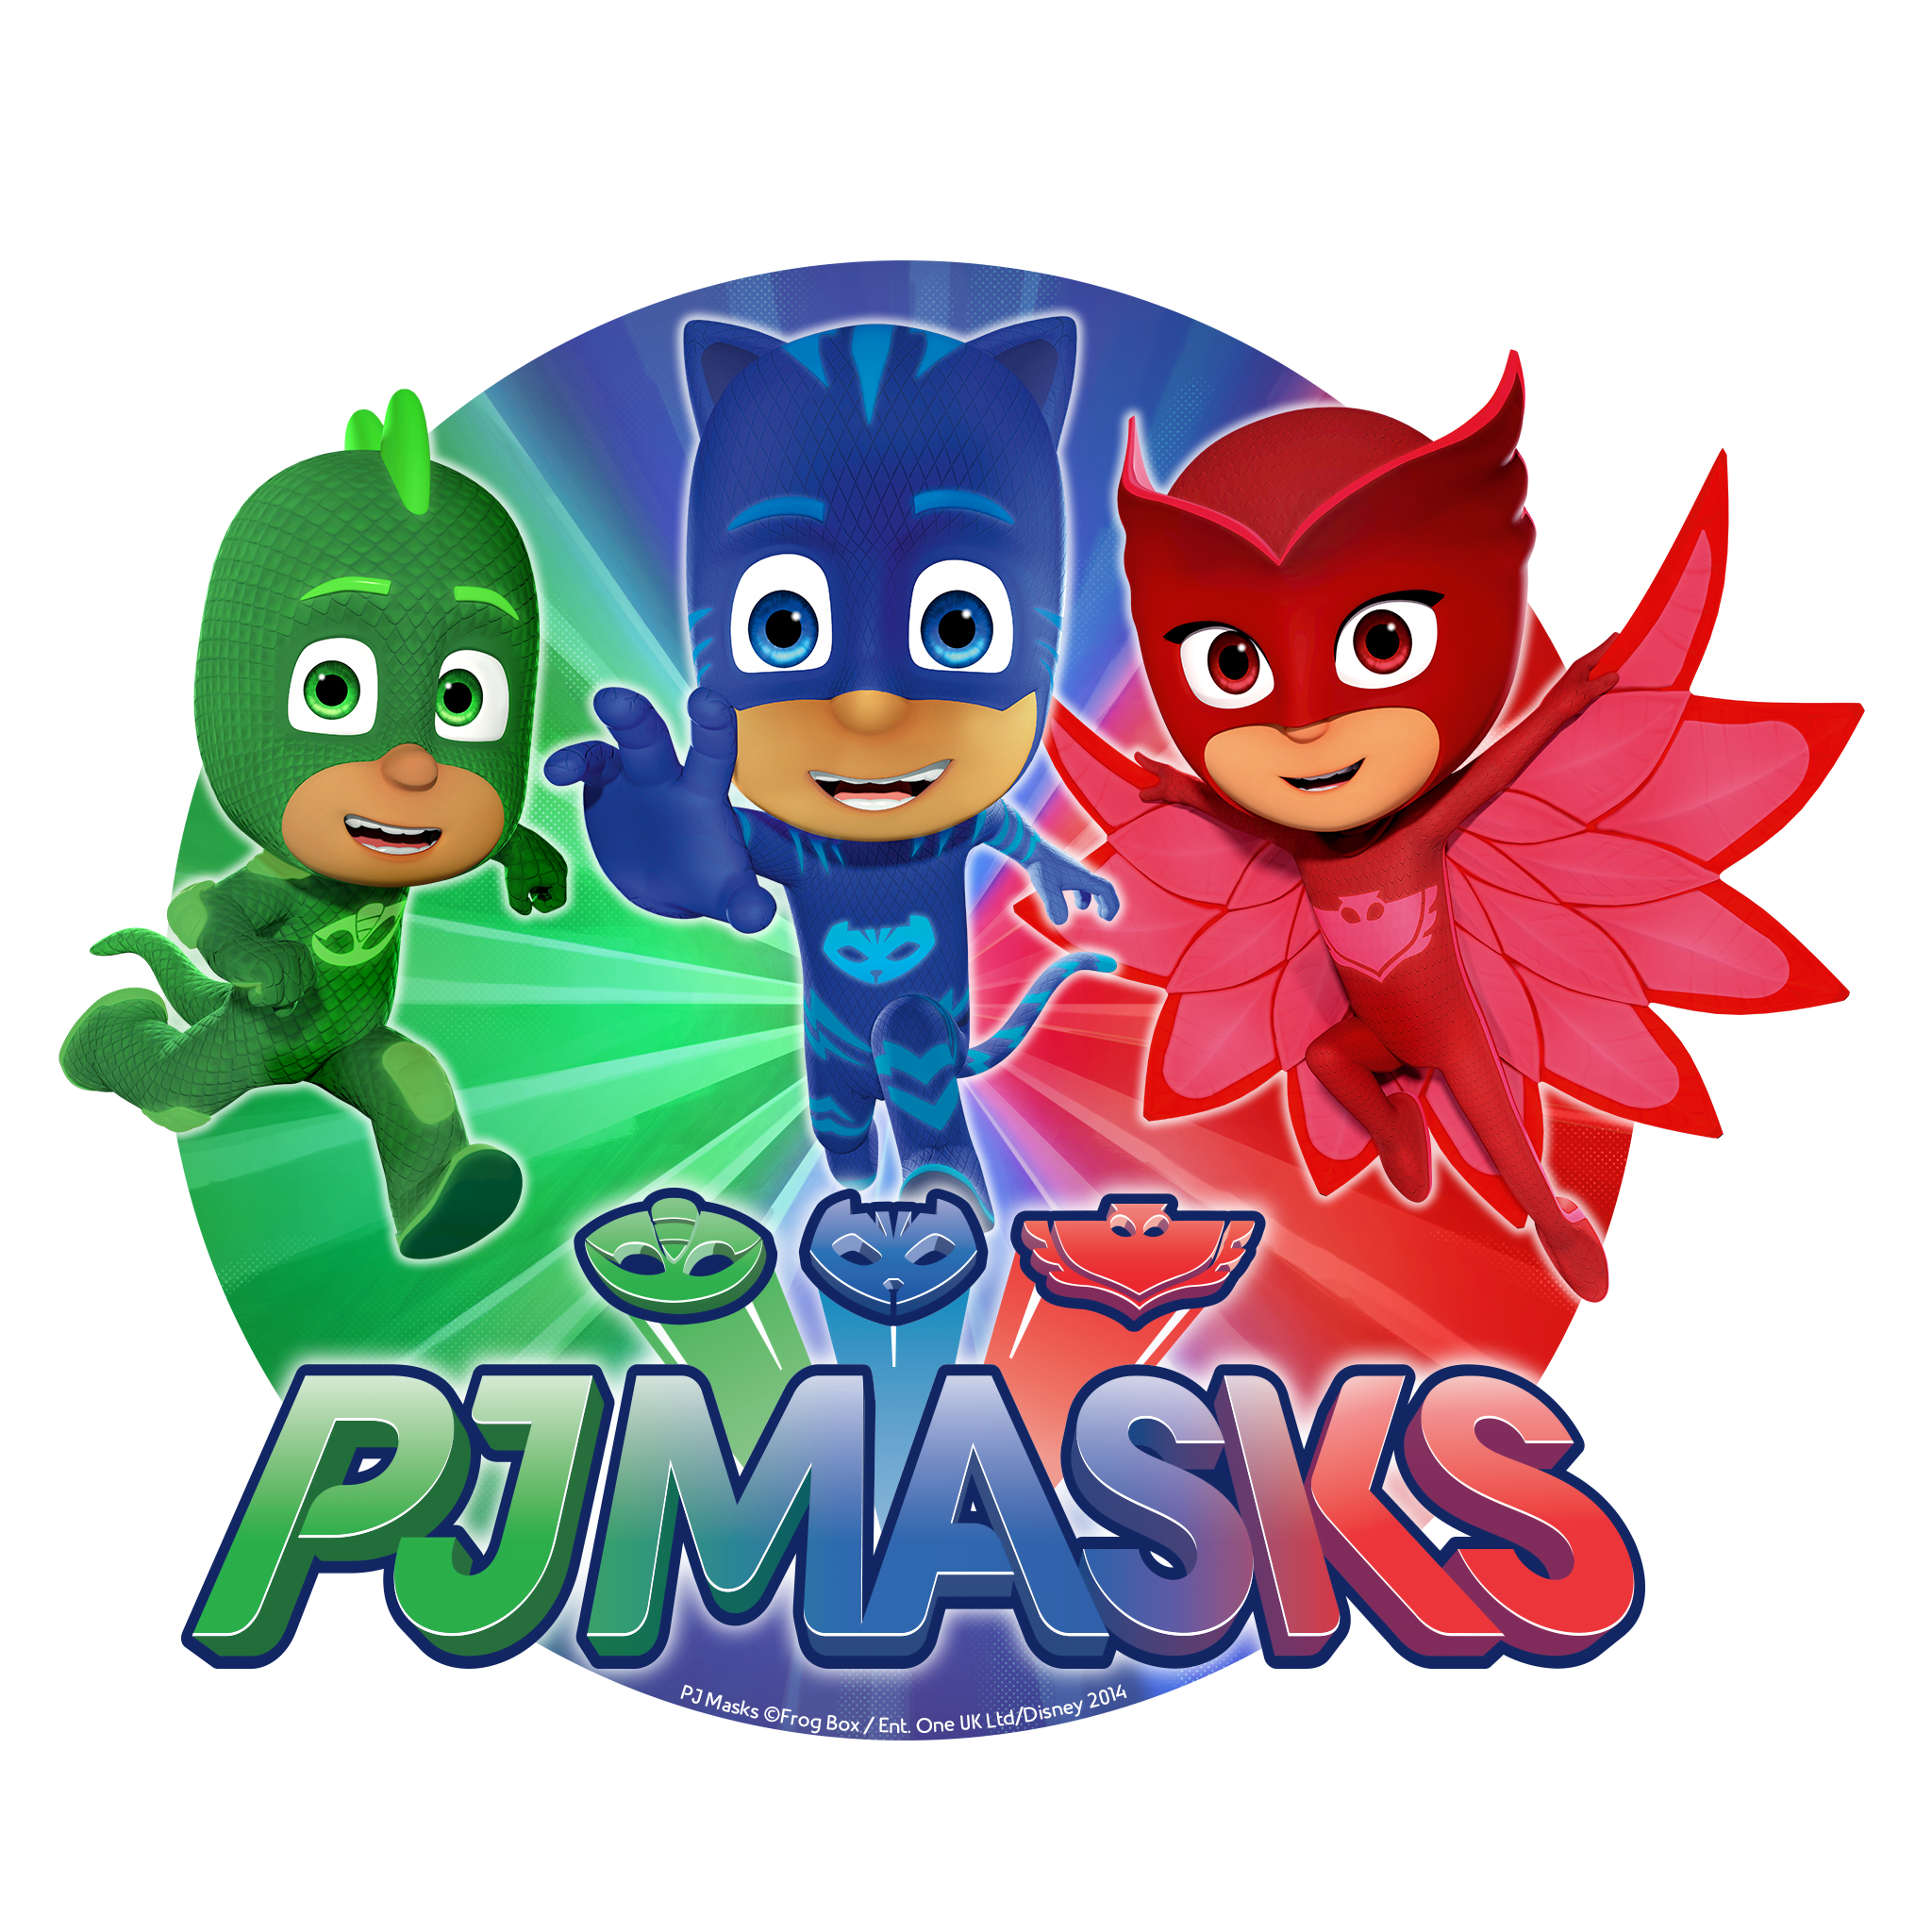 Printable Pj Mask Characters - Free Printable Templates